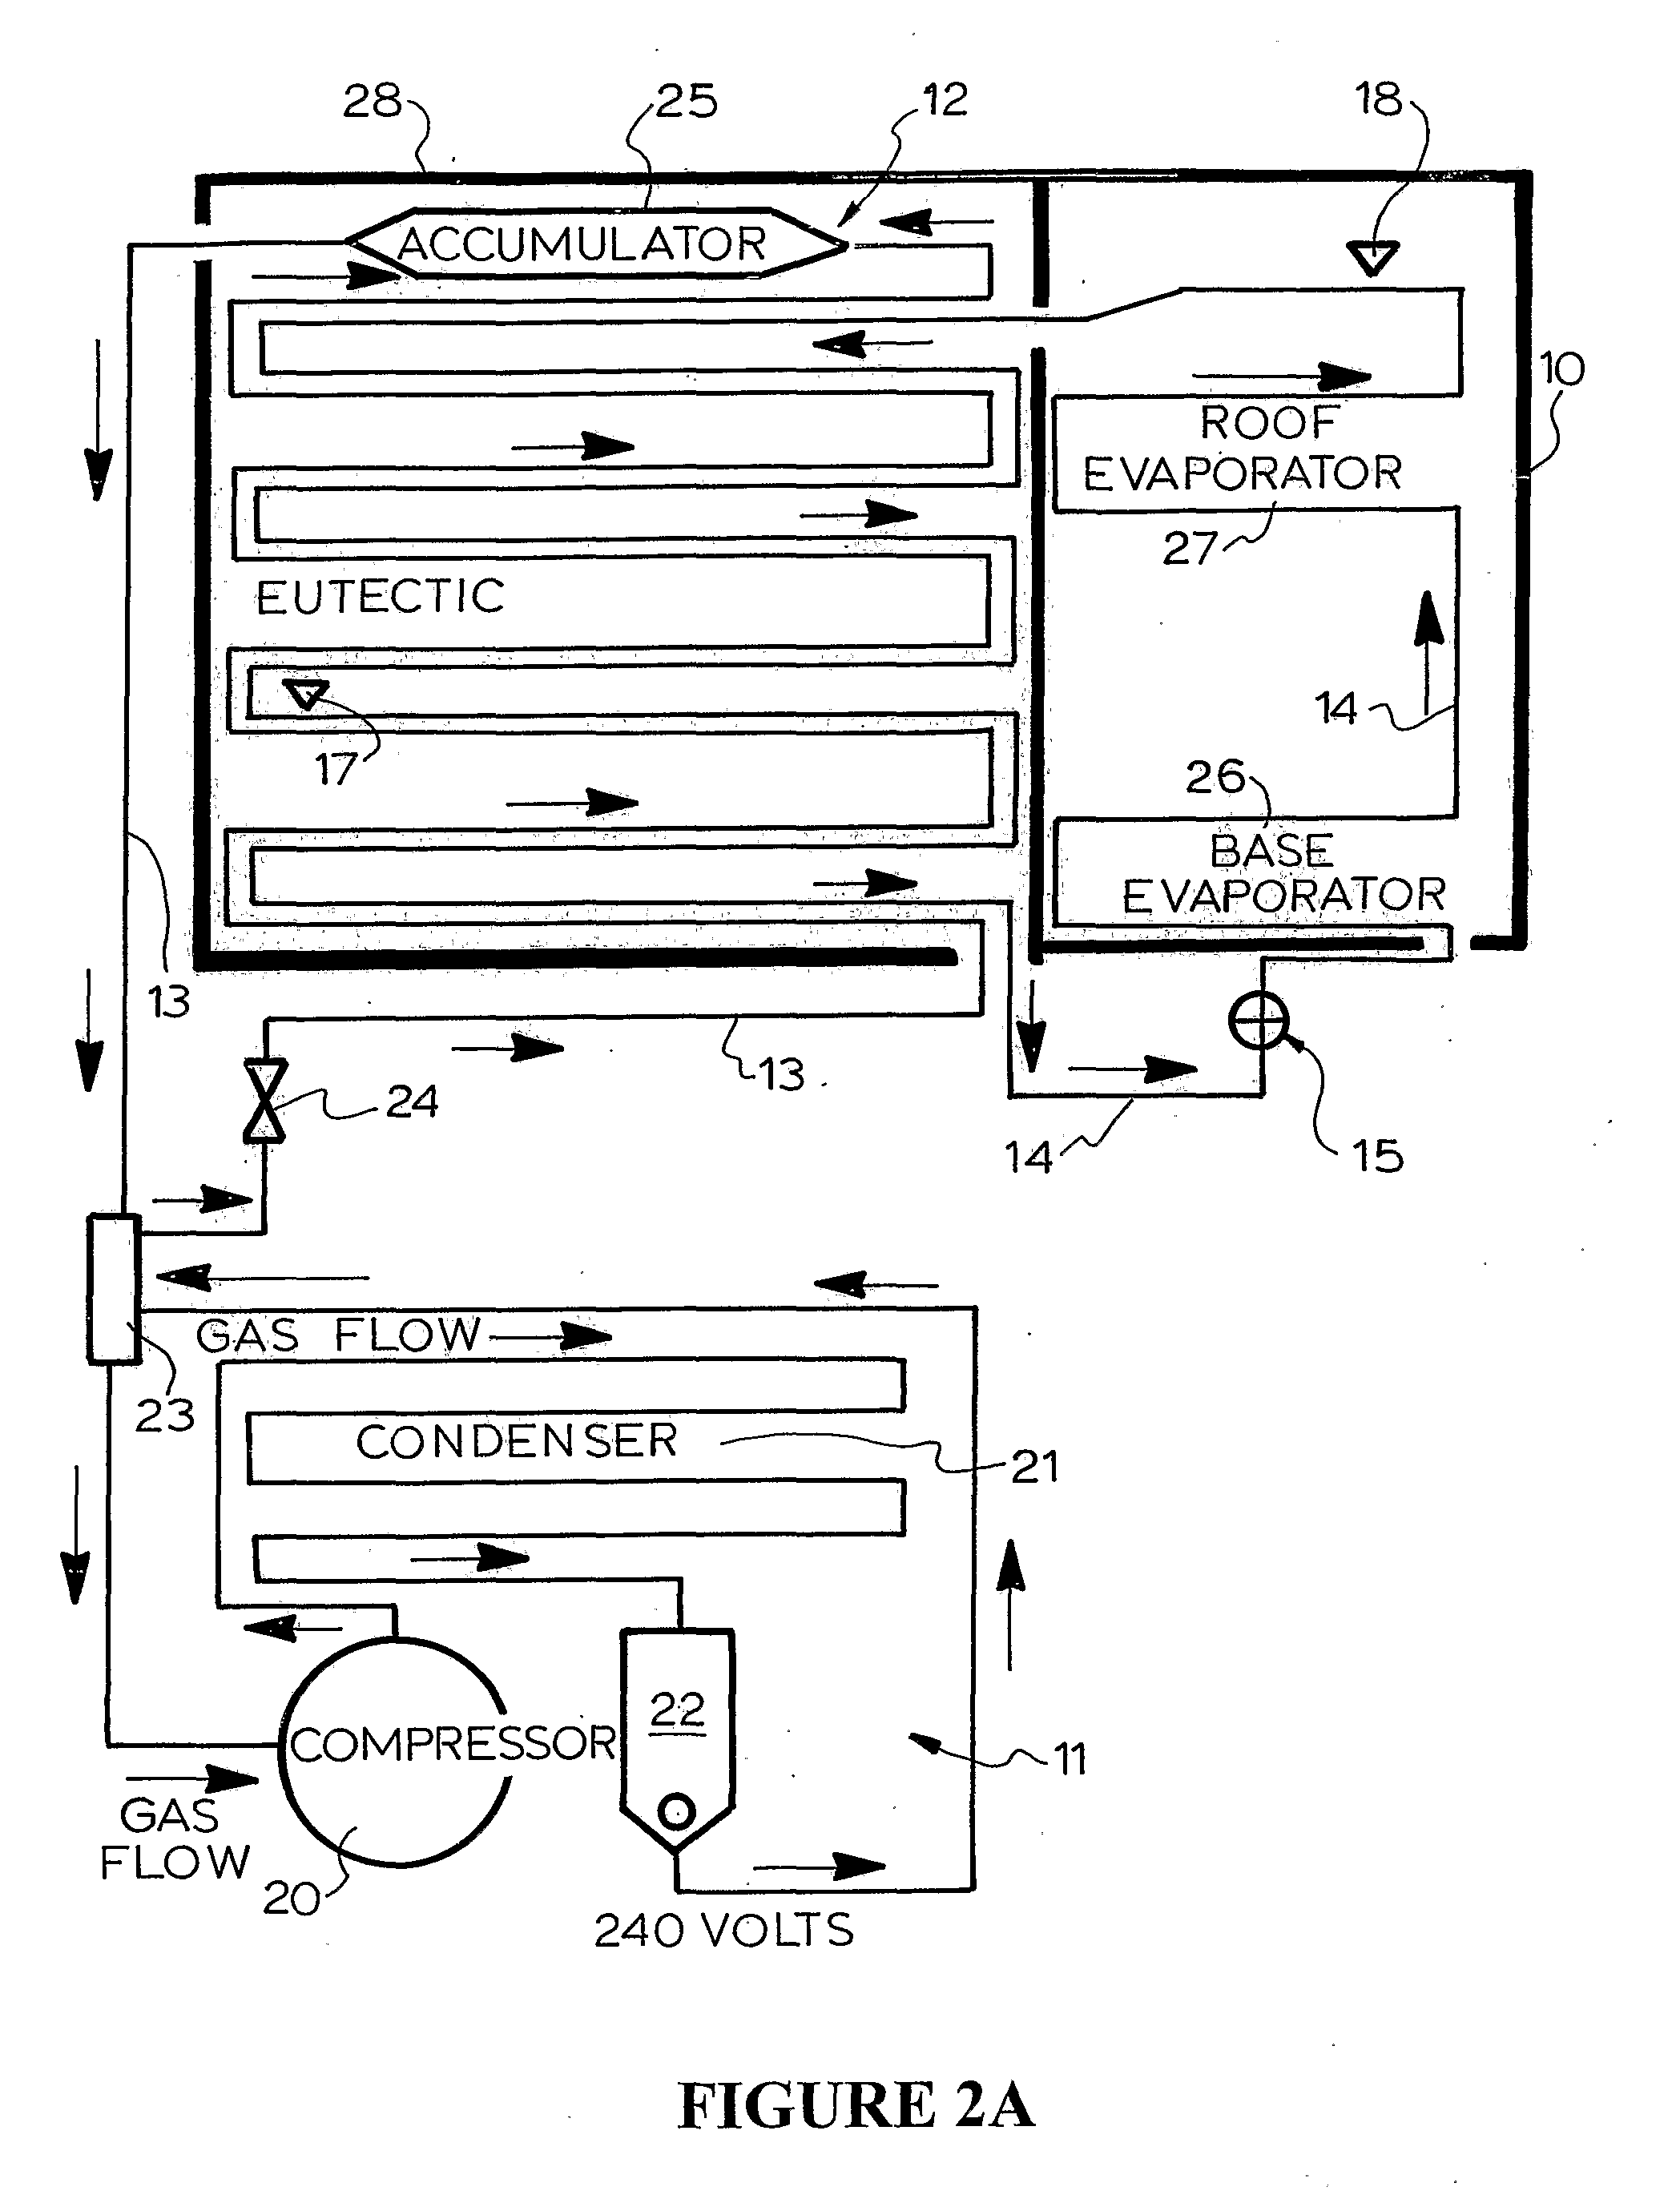 Refrigeration System